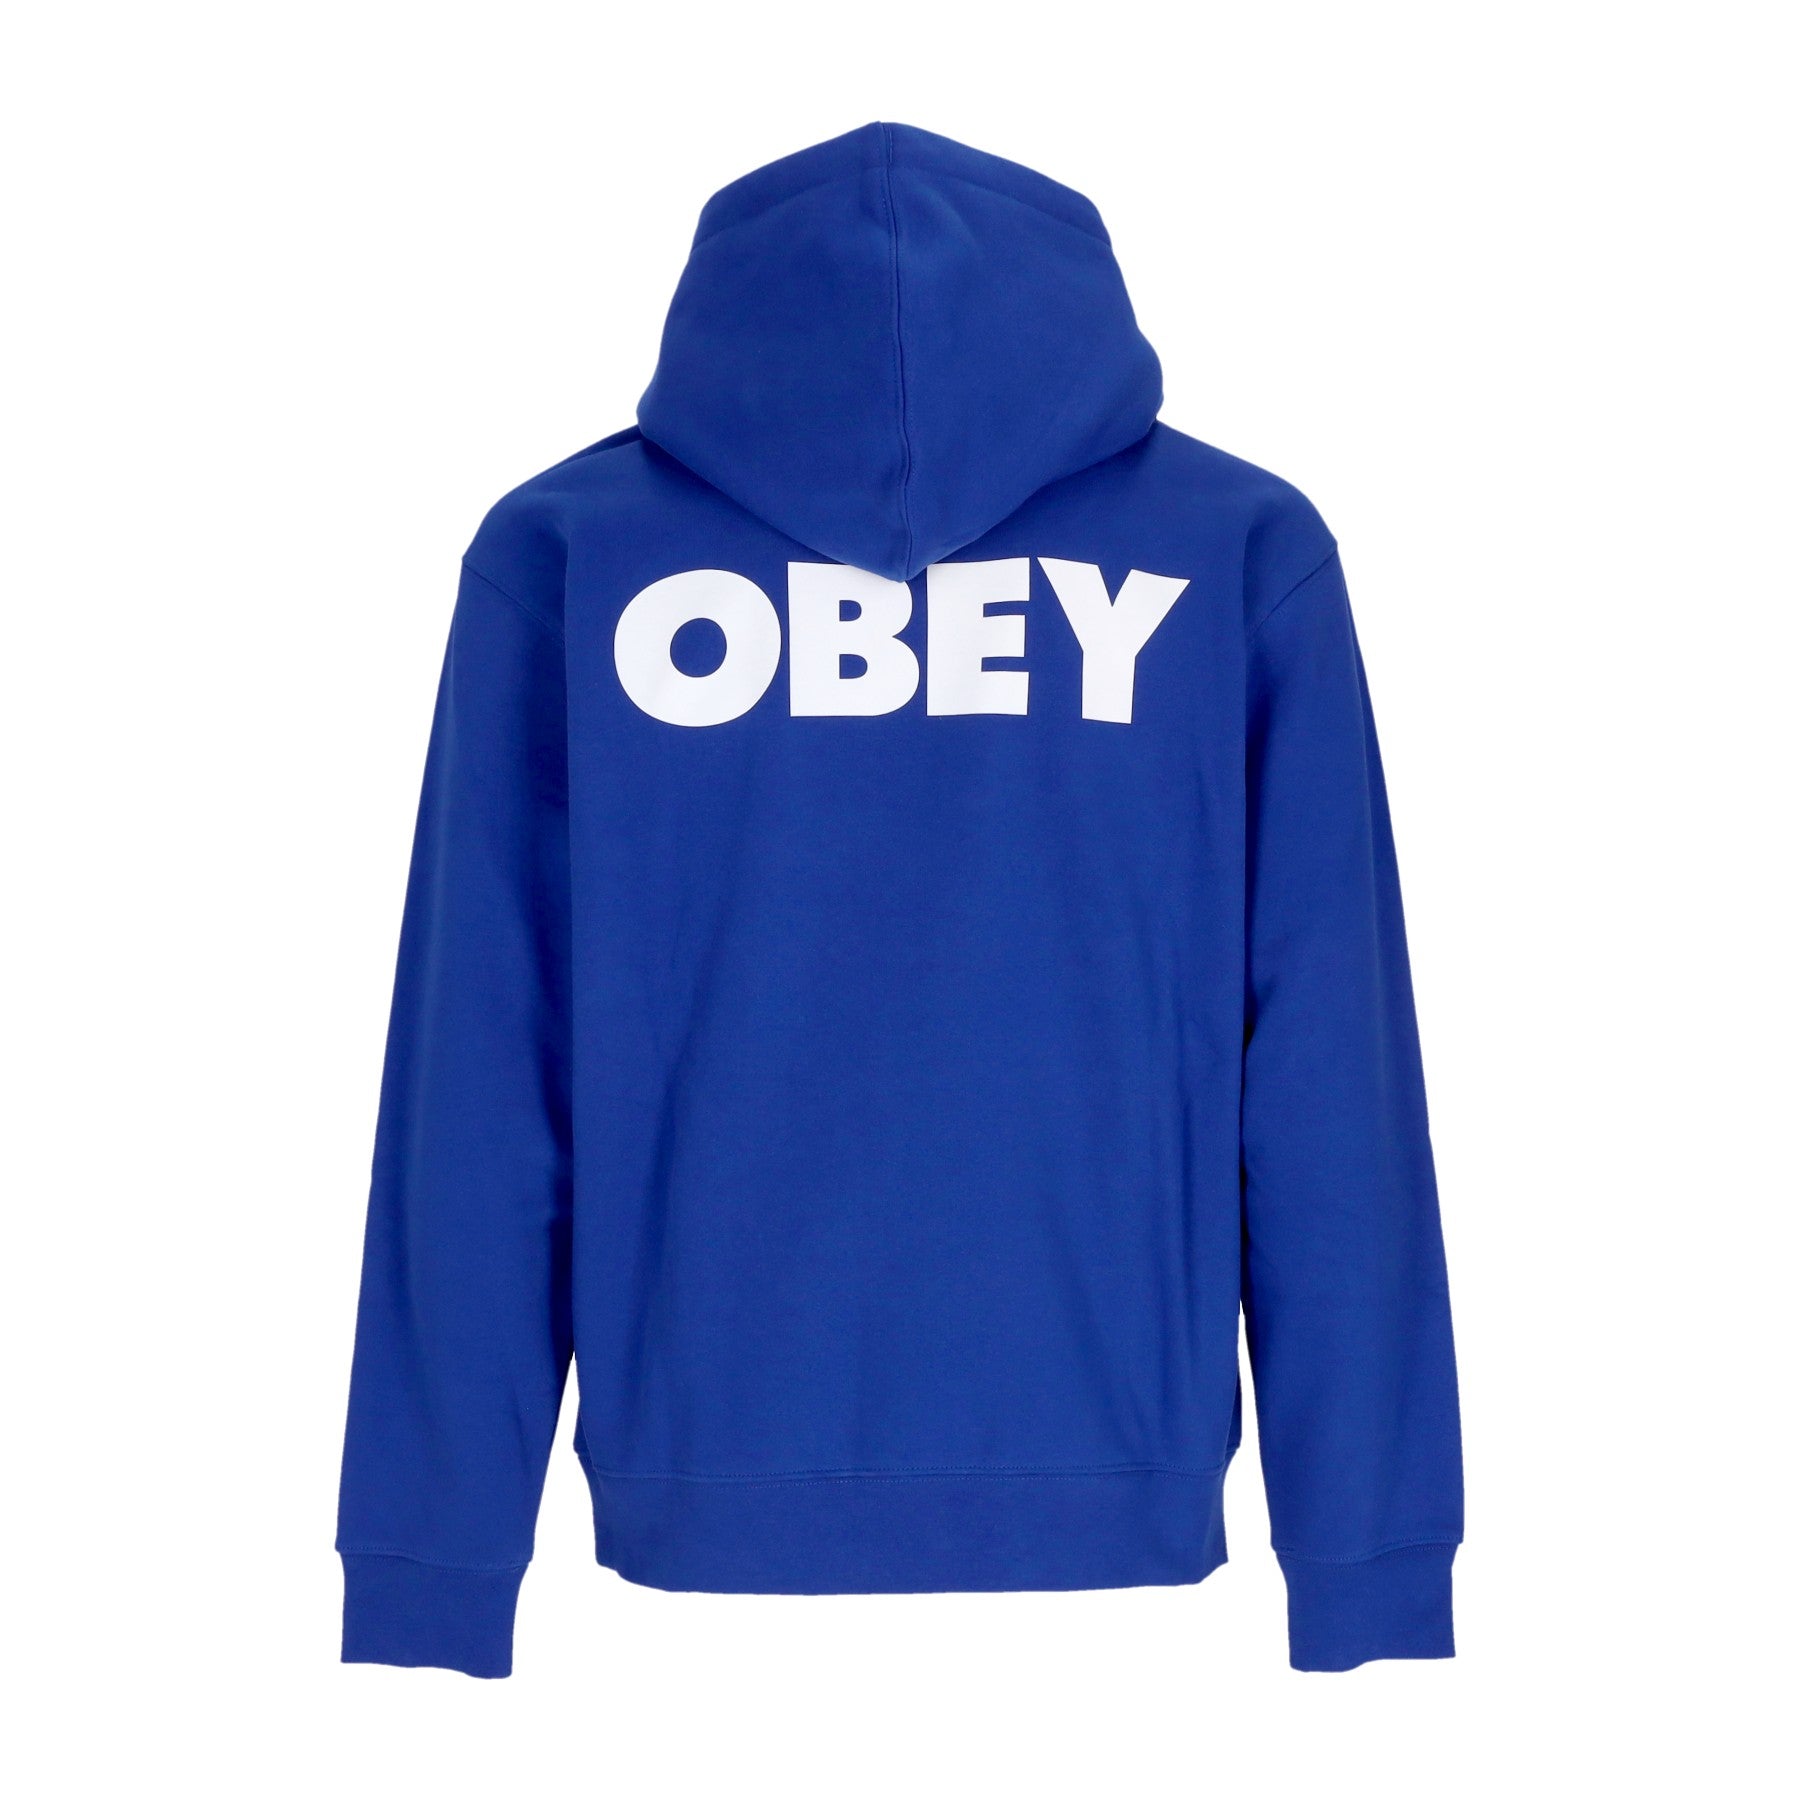 Obey, Felpa Cappuccio Uomo Bold Premium Hooded Fleece, Surf Blue